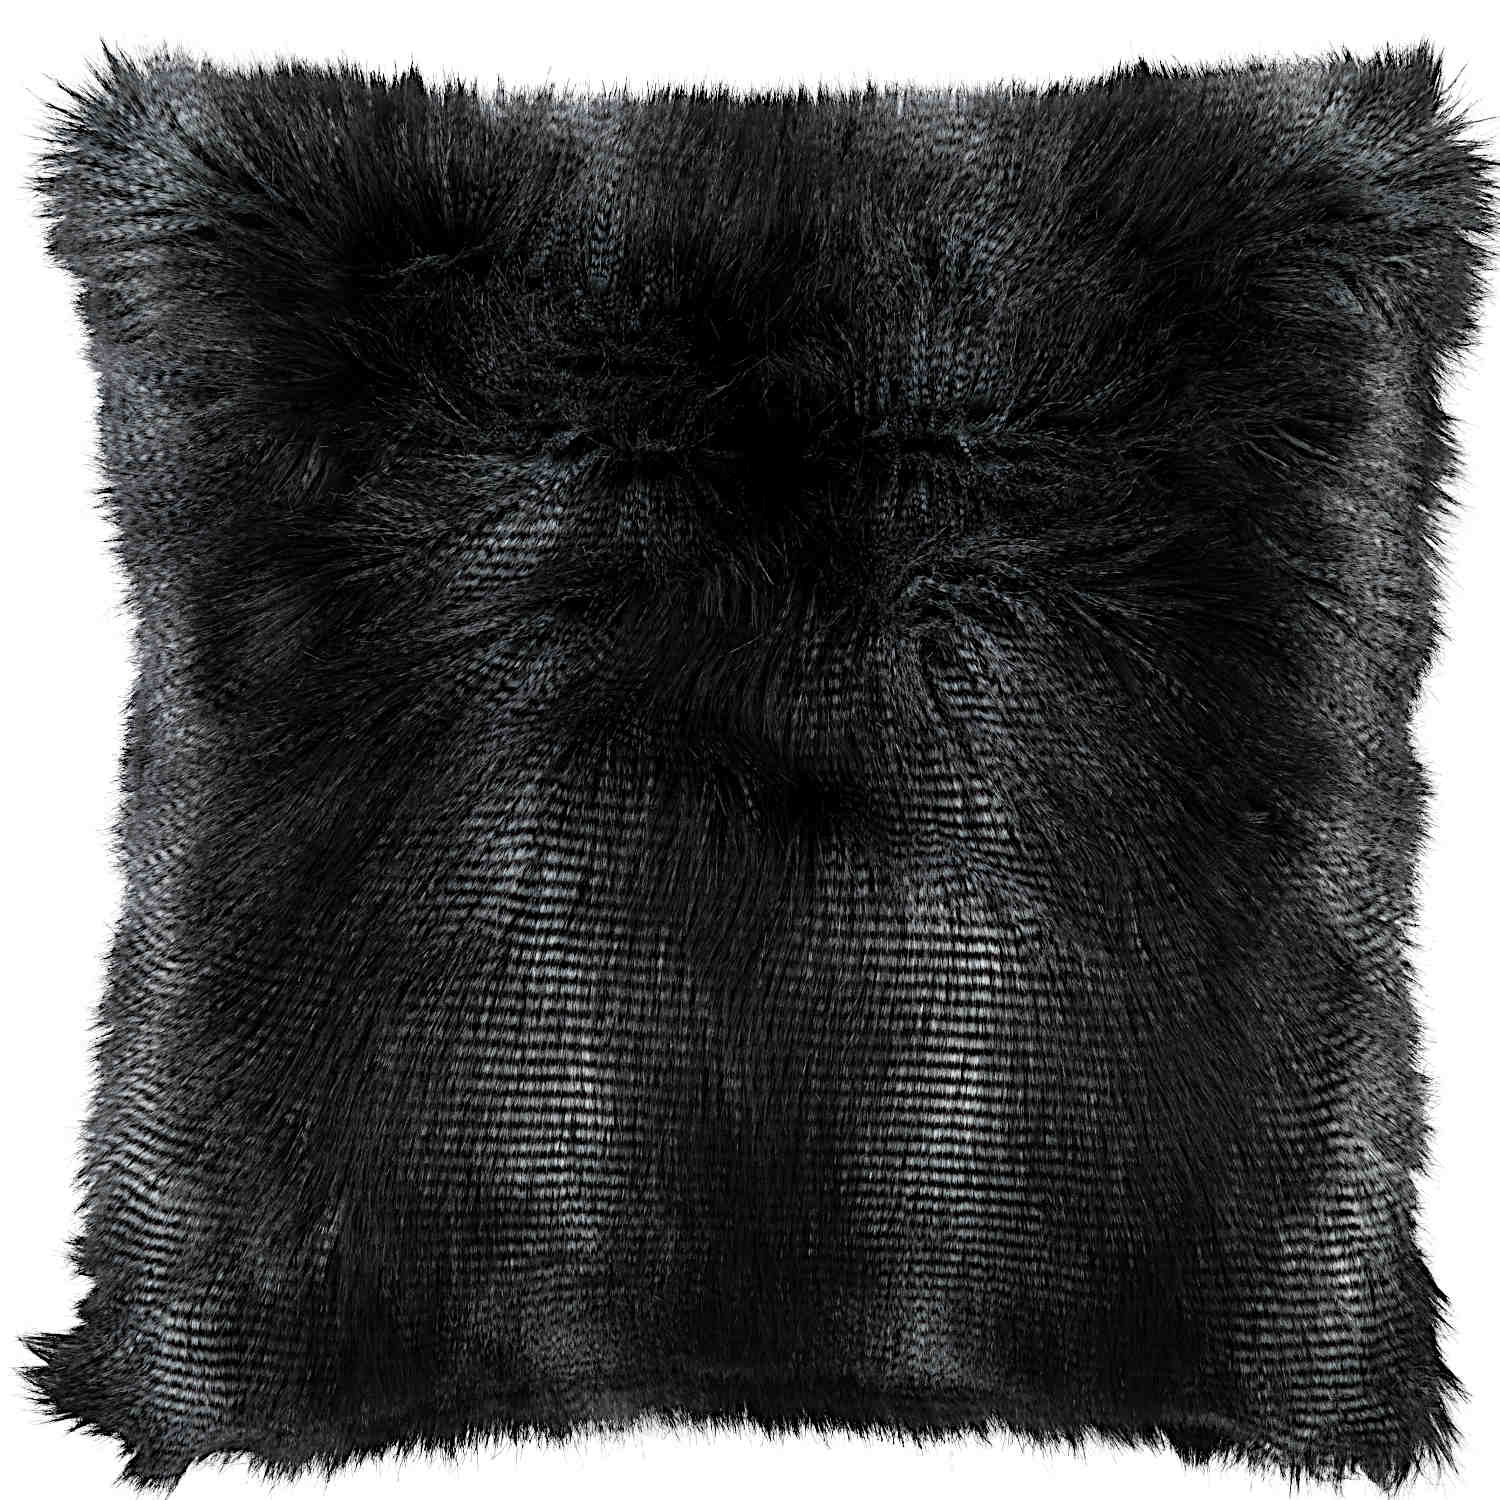 https://www.definingelegance.com/media/Lili_Alessandra/2019-Black-Faux-Fur/Lili-Alessandra-L10005SB-Black-Fur-Pillow-24X24-JRP-0184-L.jpg